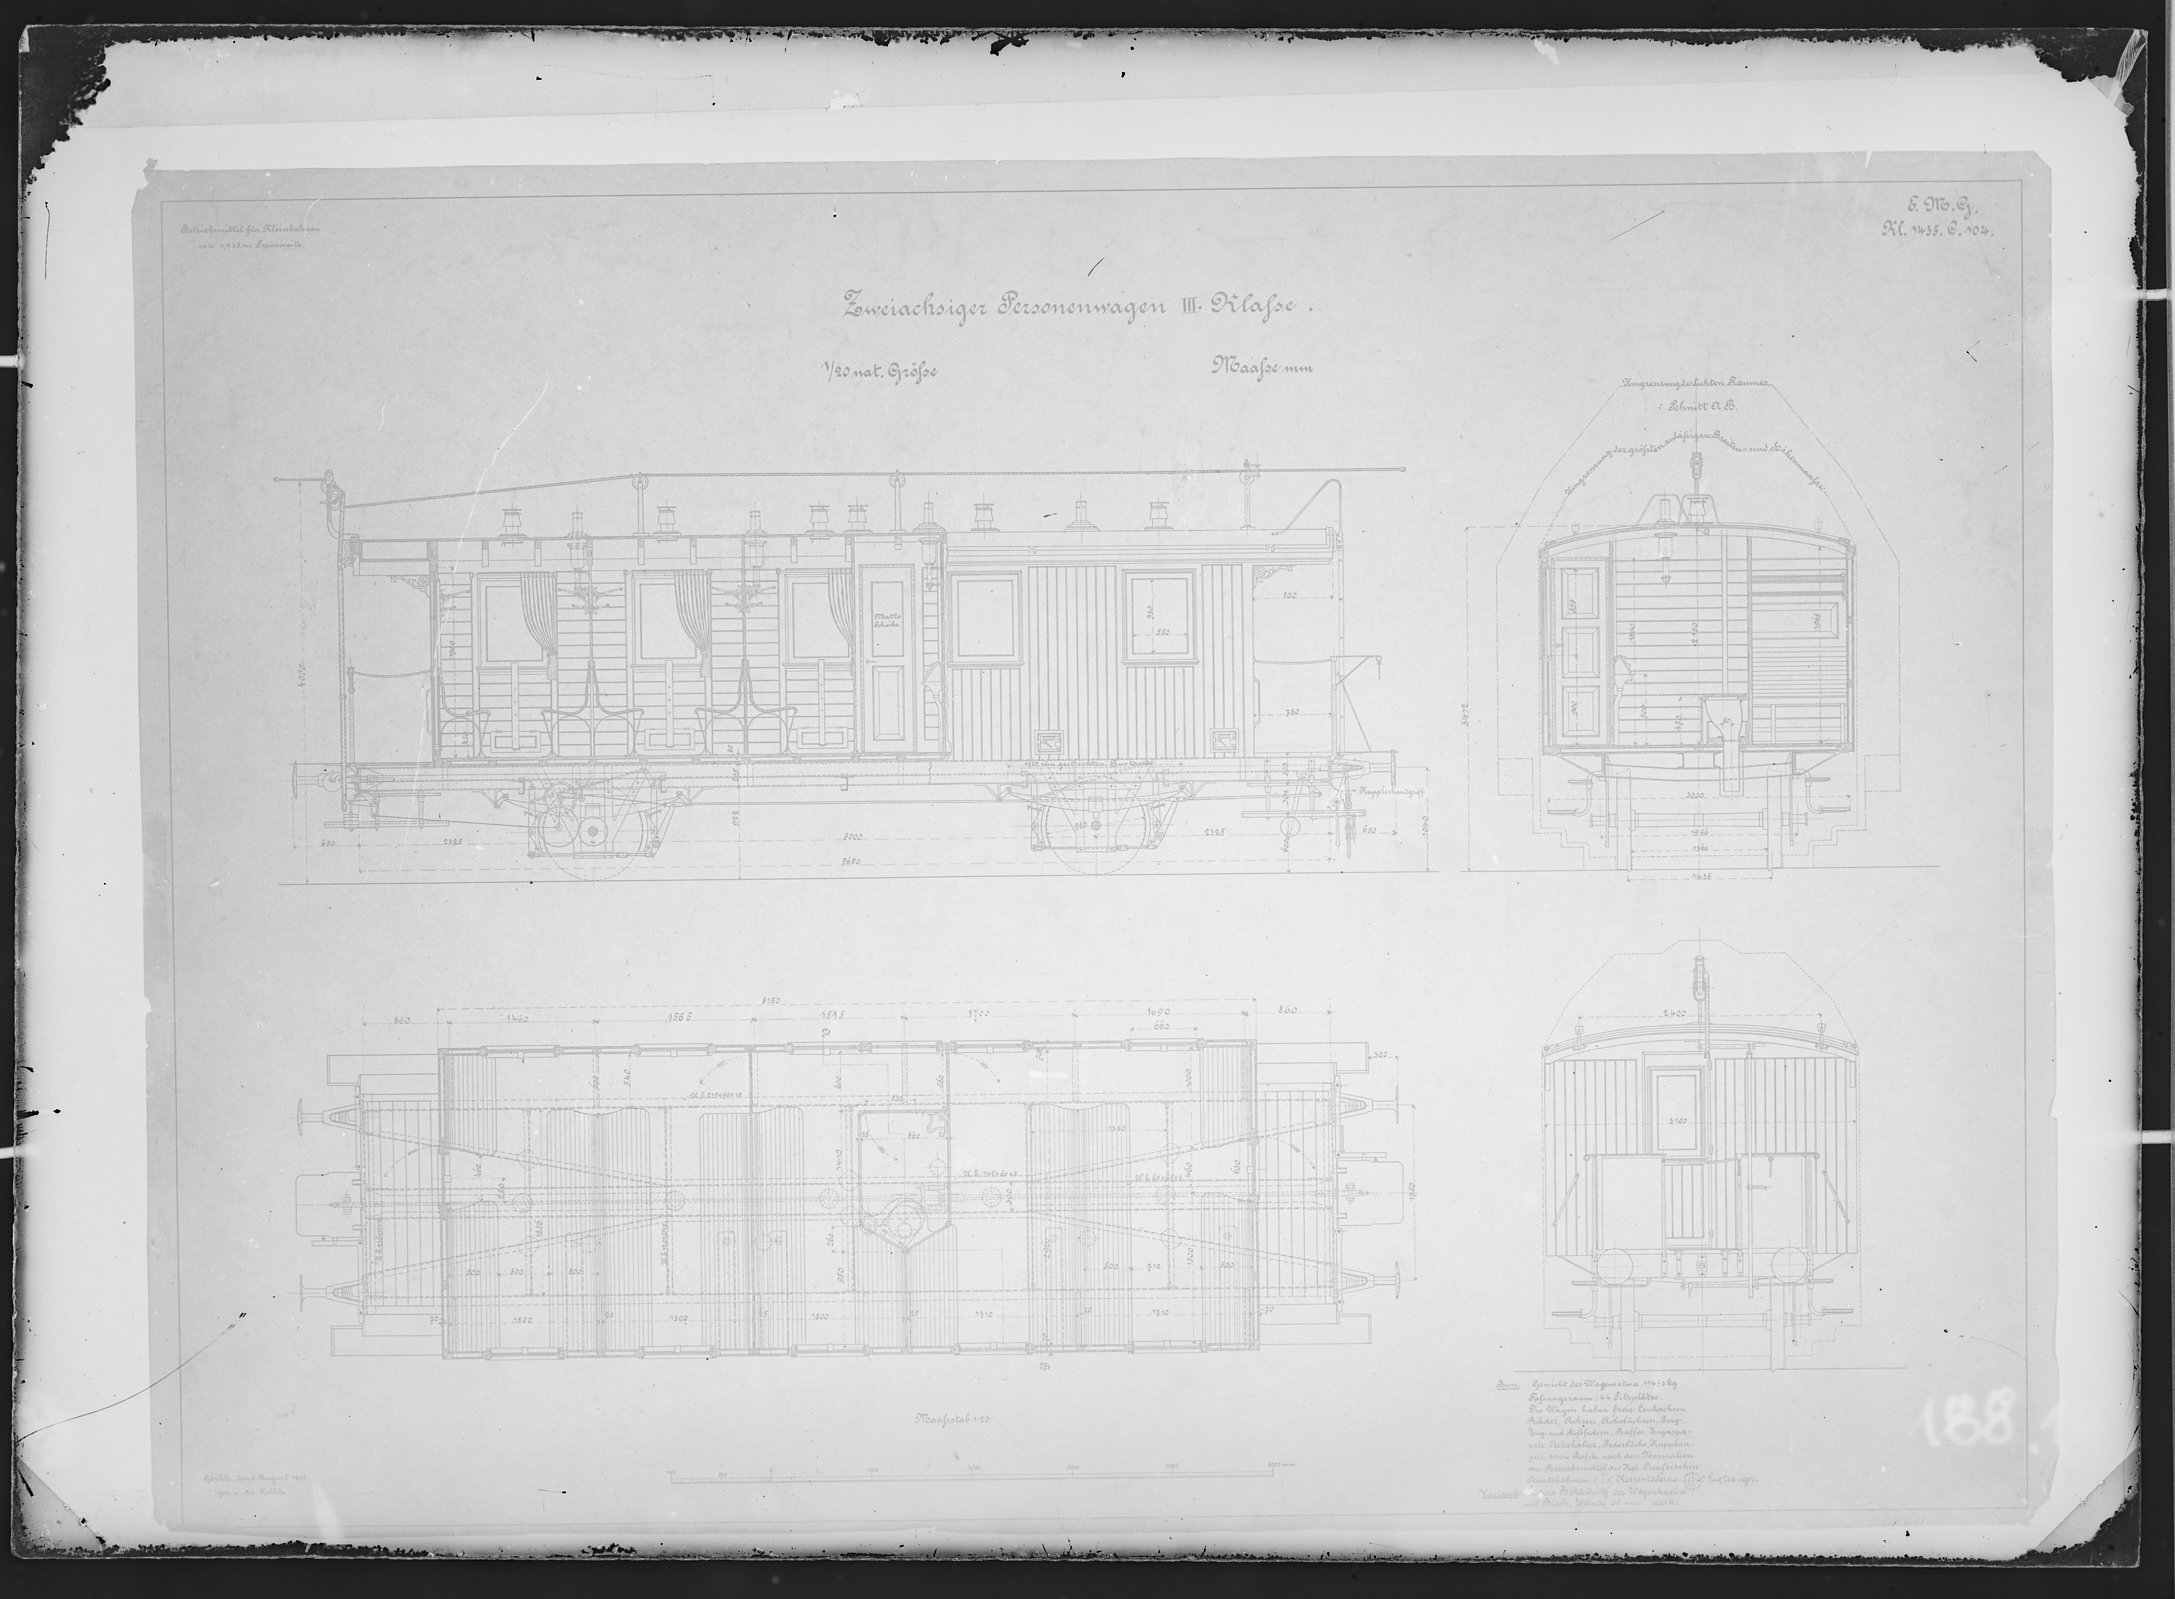 Fotografie: Maßzeichnung eines zweiachsigen Personenwagens dritter Klasse für Kleinbahn, Maßstab 1:20 (Spurweite: 1435 mm), 1895. (Verkehrsmuseum Dresden CC BY-NC-SA)